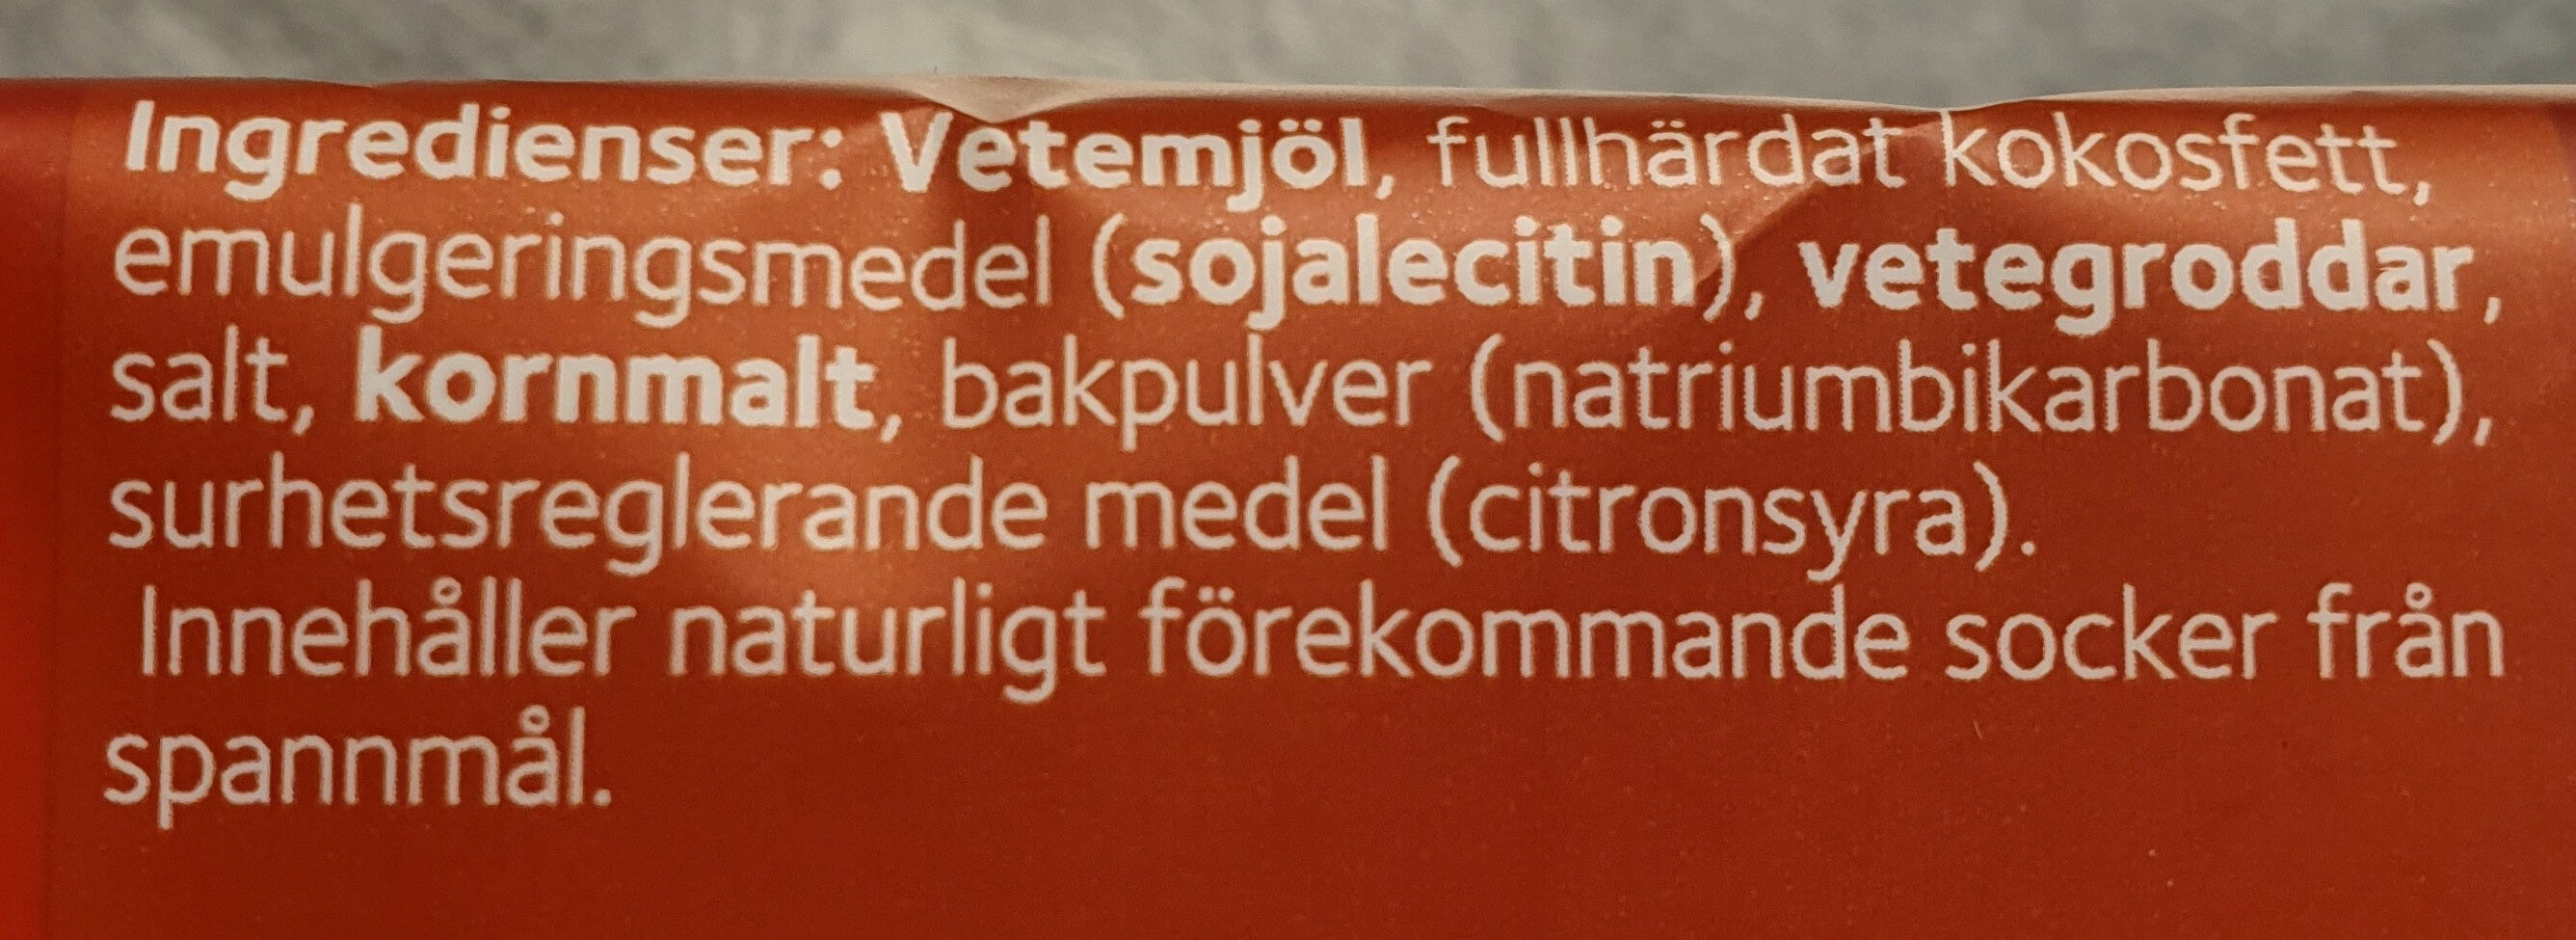 Smörgåsrån Original - Ingredienser